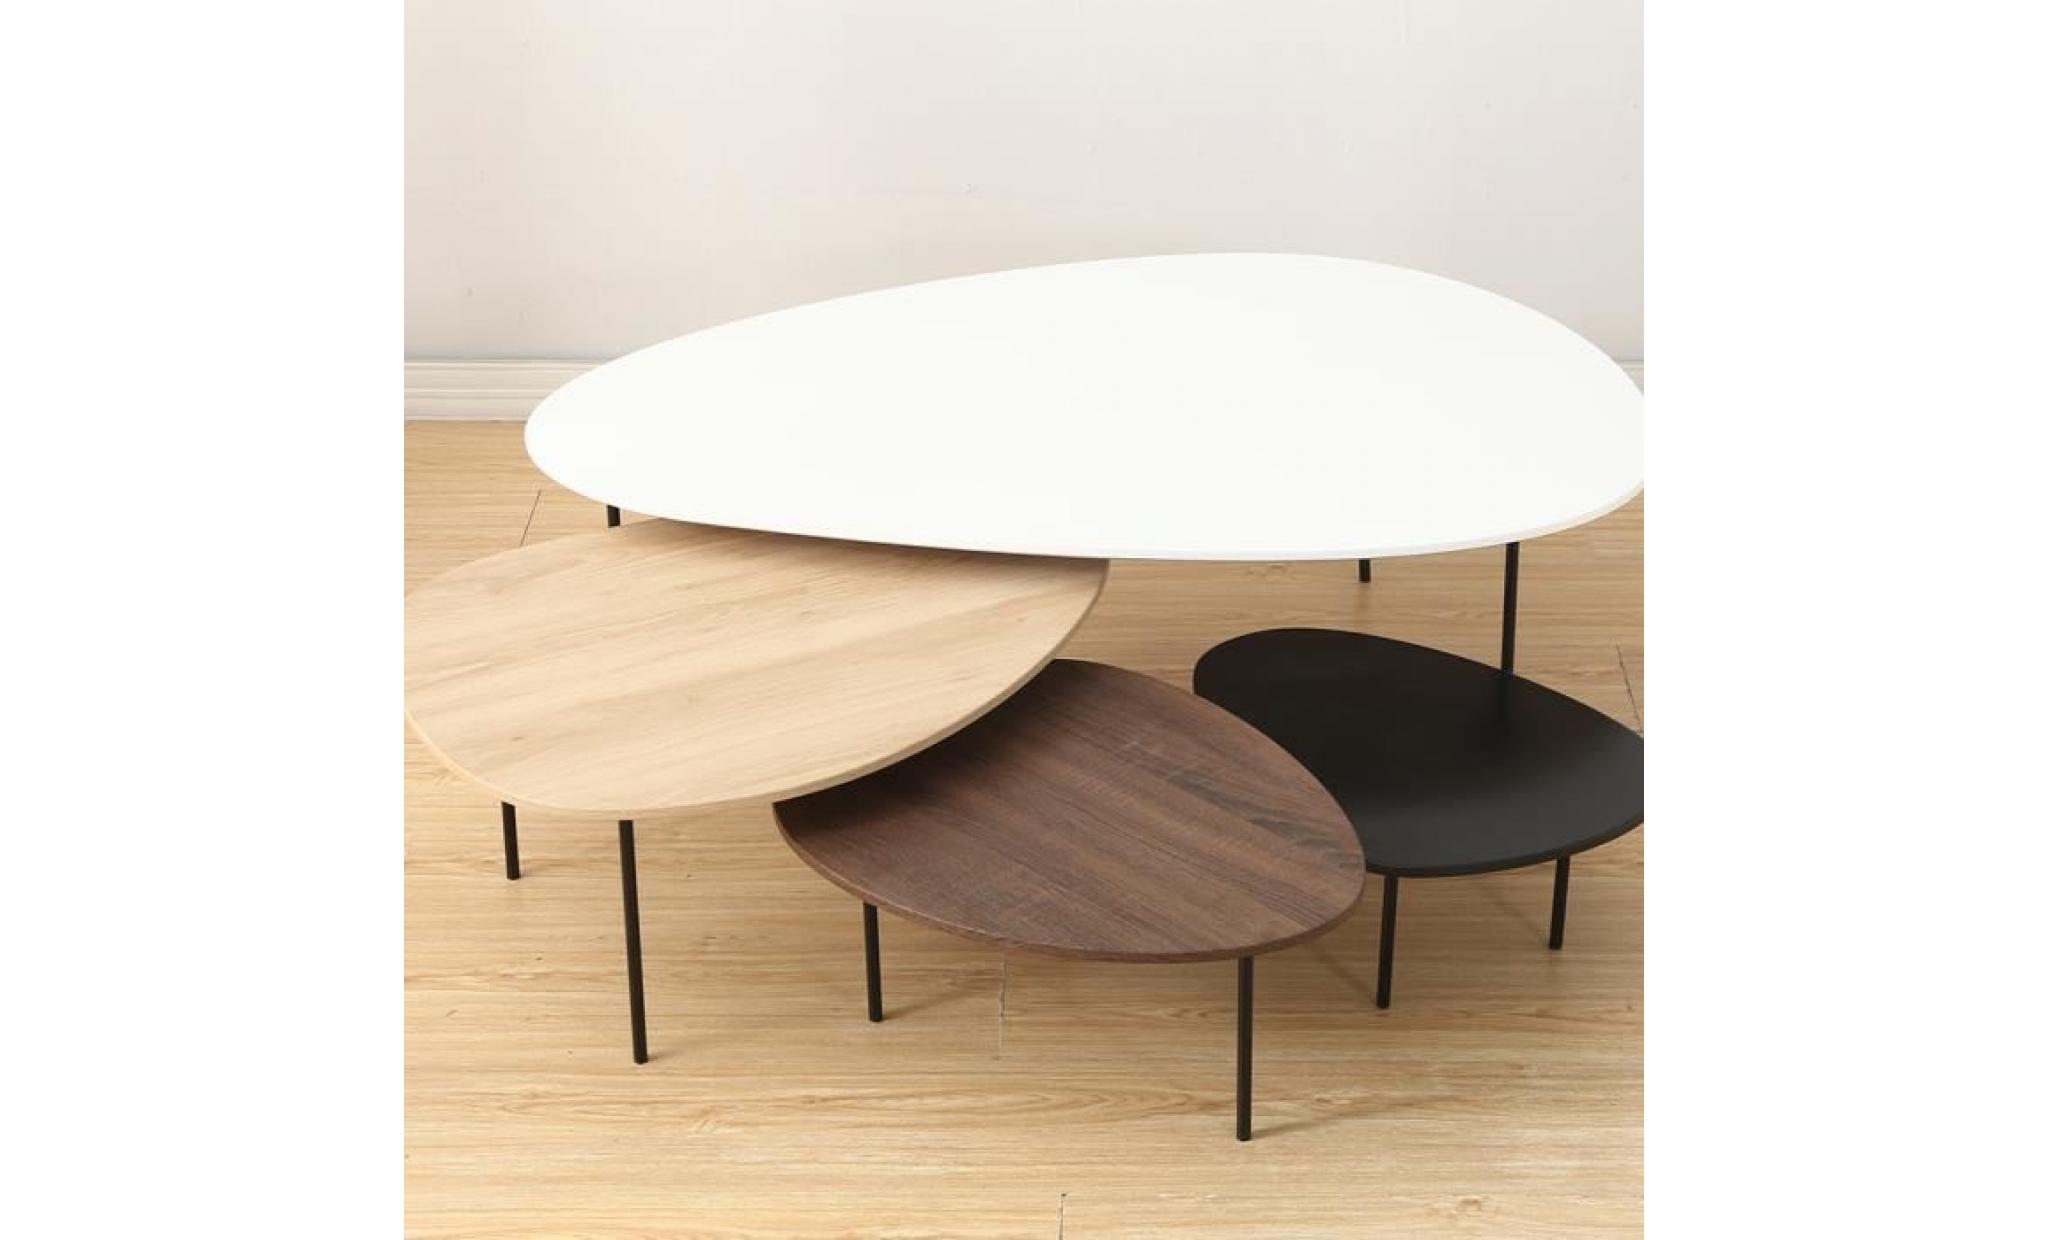 ensemble de quatre tables basses gigognes modernes, tables basse en bois différents coloris